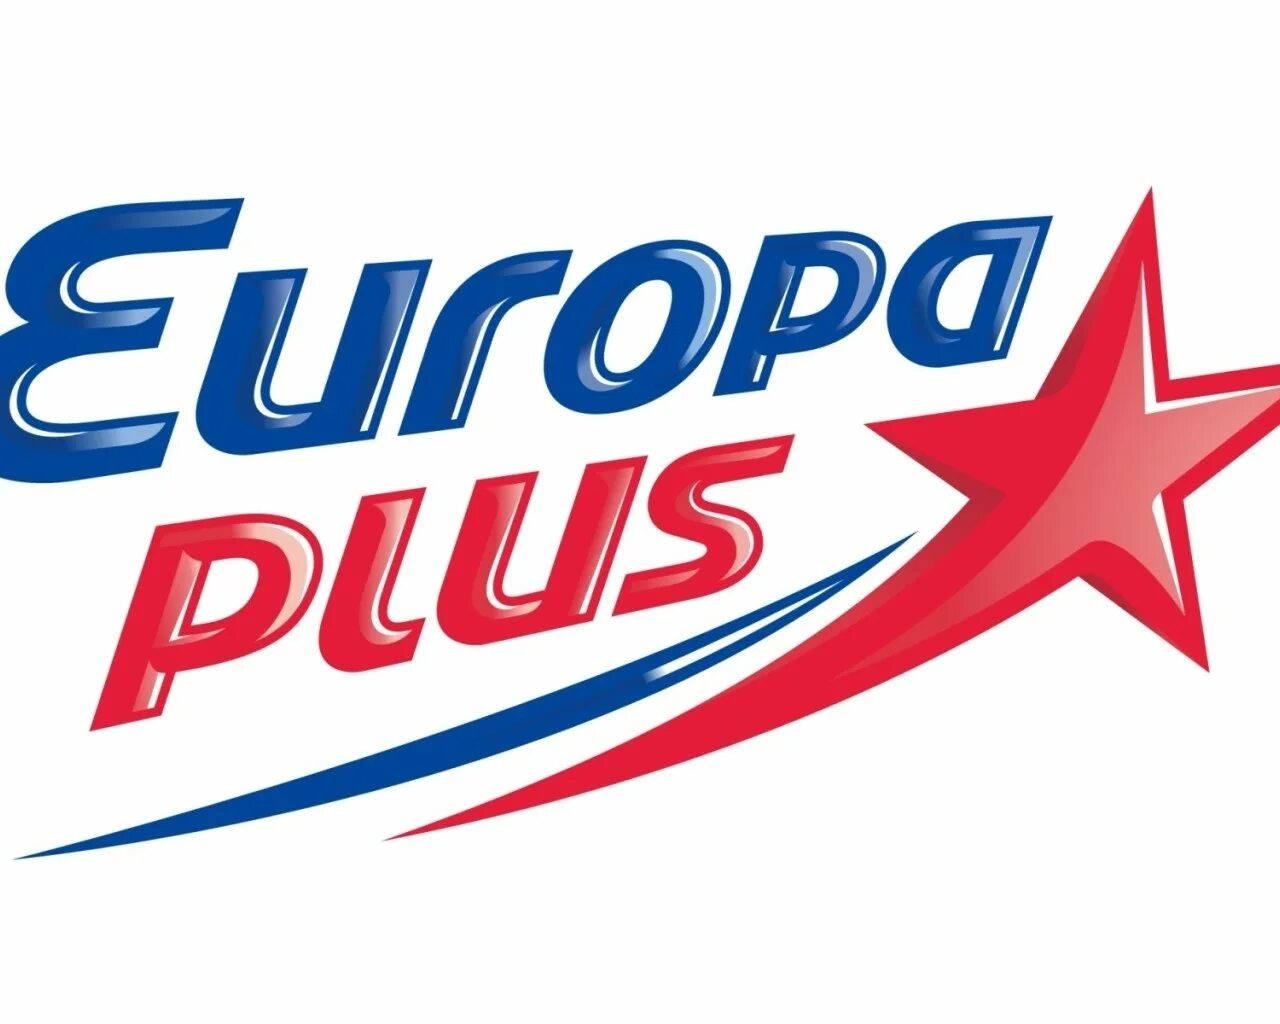 Europa сайт. Европа плюс. Европа плюс логотип. Европа плюс Набережные Челны. Европа плюс Владивосток.